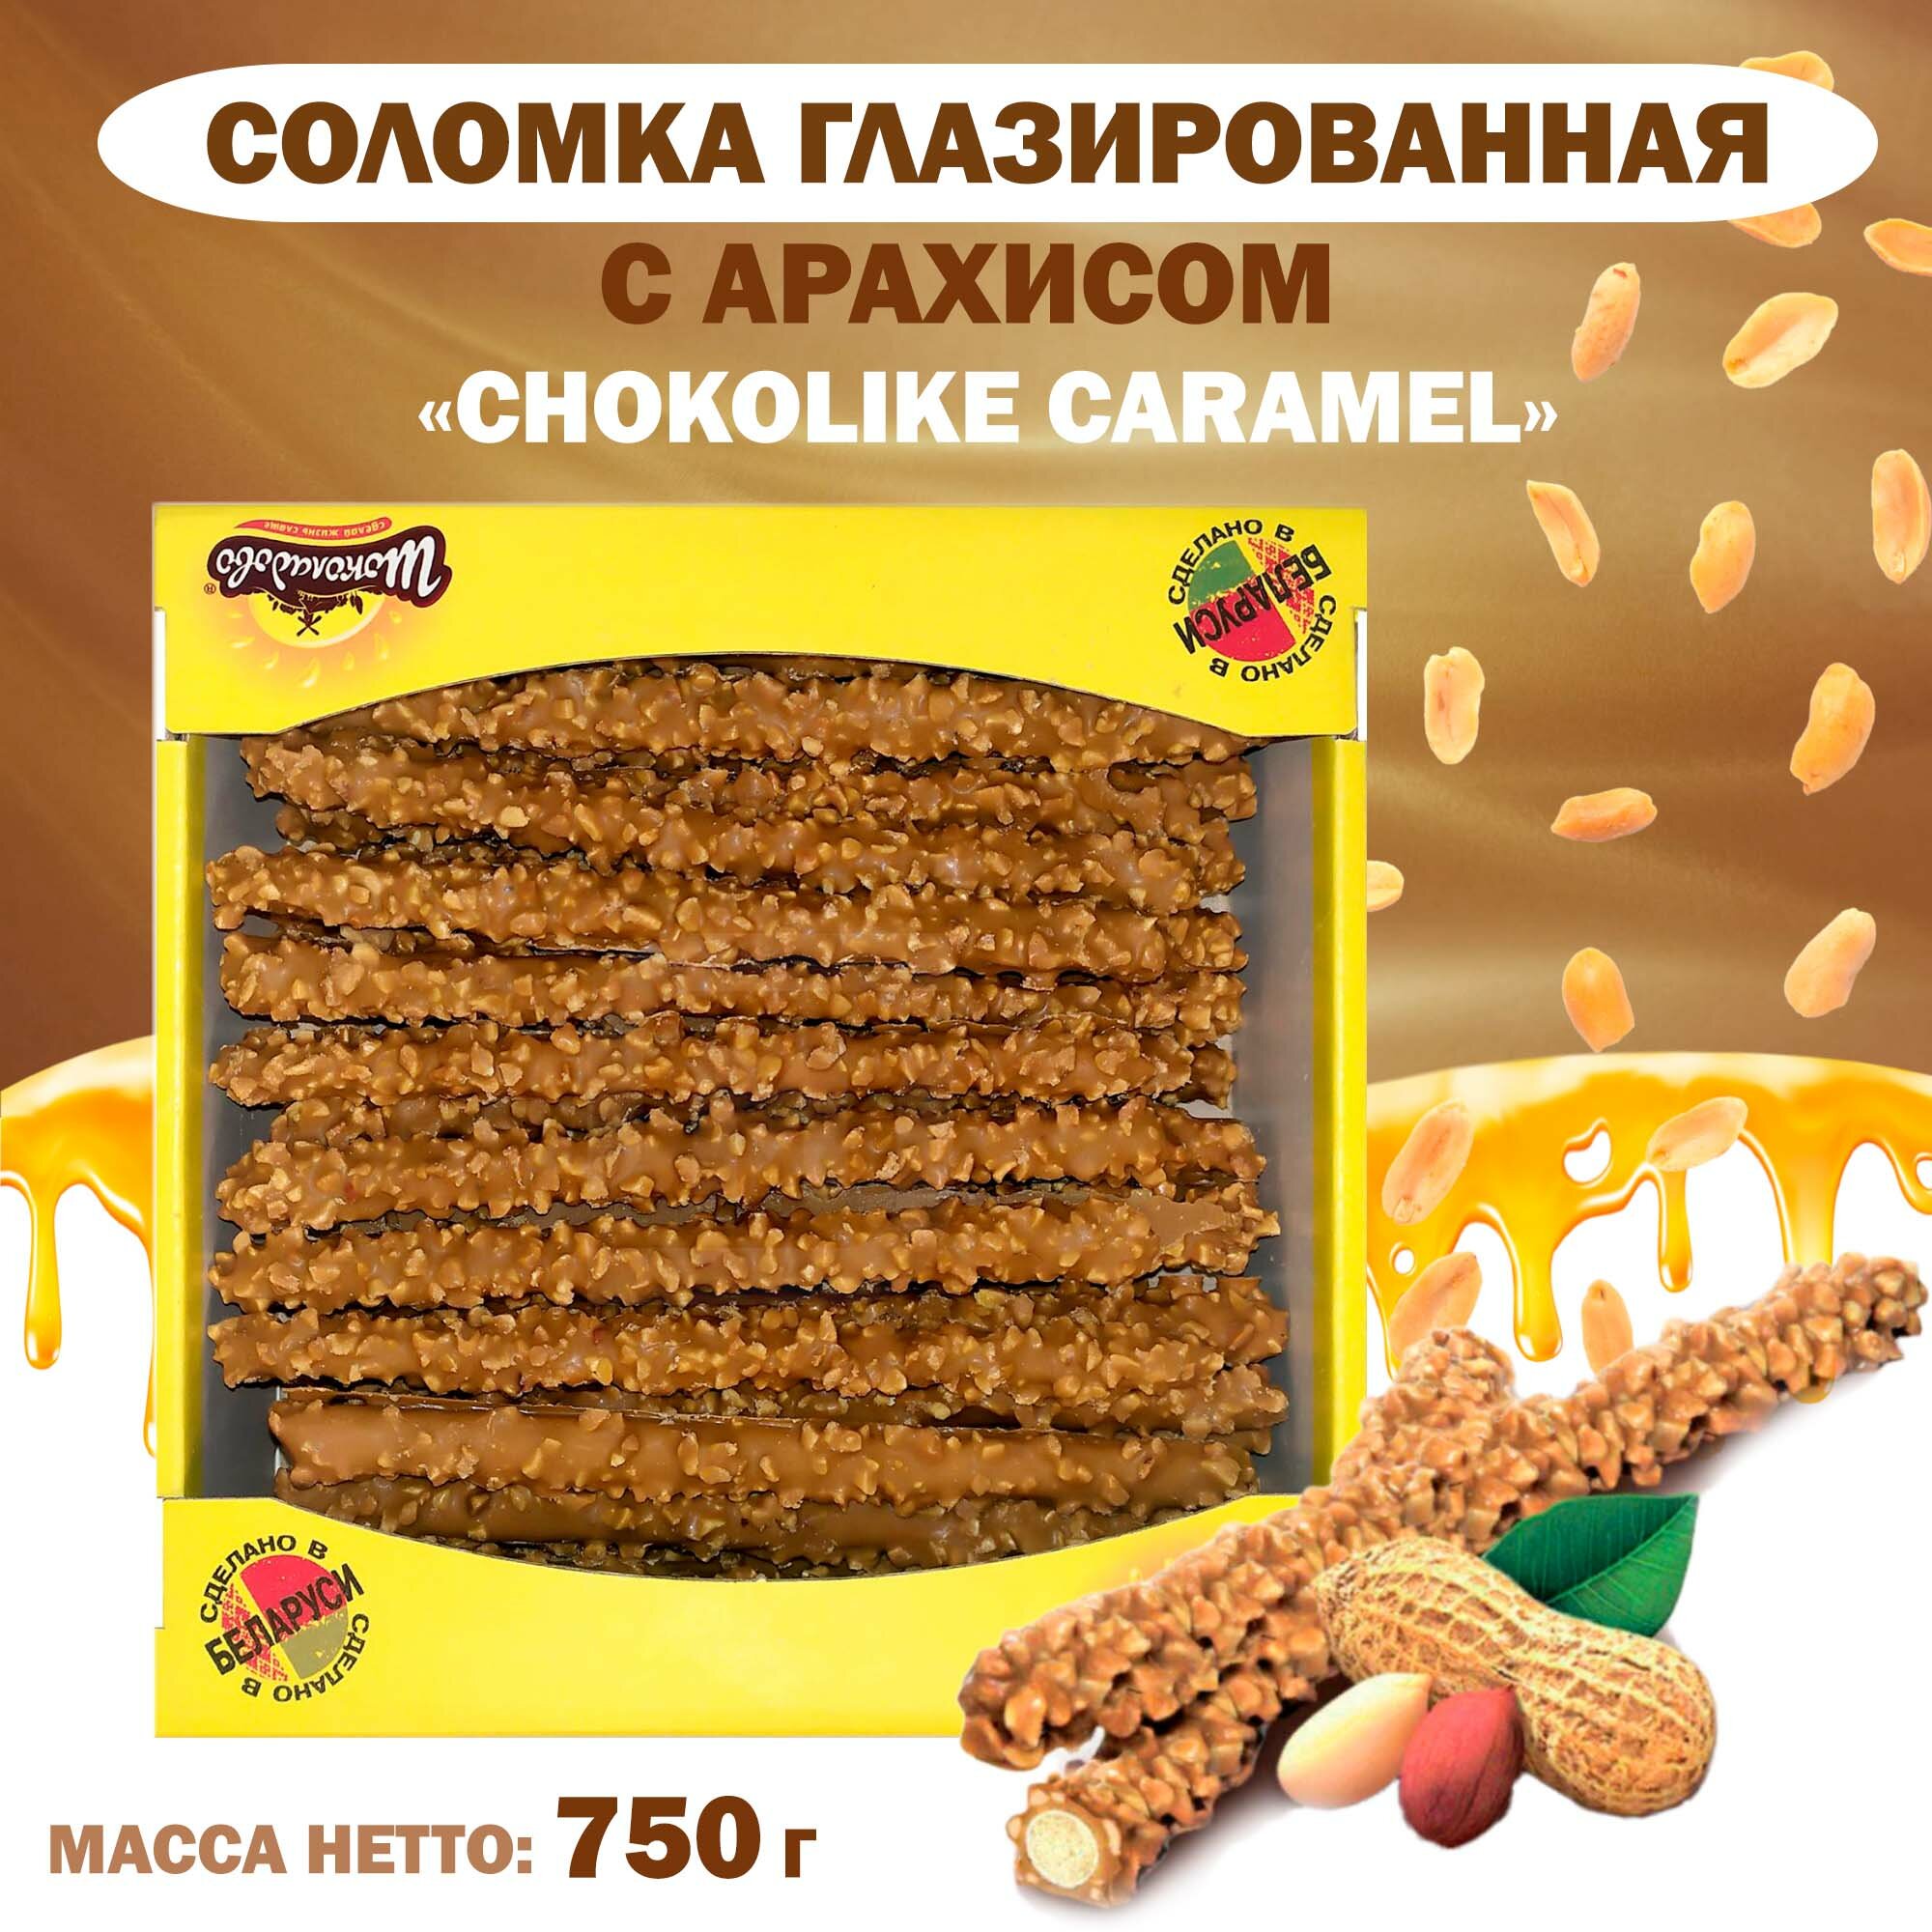 Соломка глазированная "CHOCOLIKE CARAMEL" с арахисом в шоколаде, 750 г